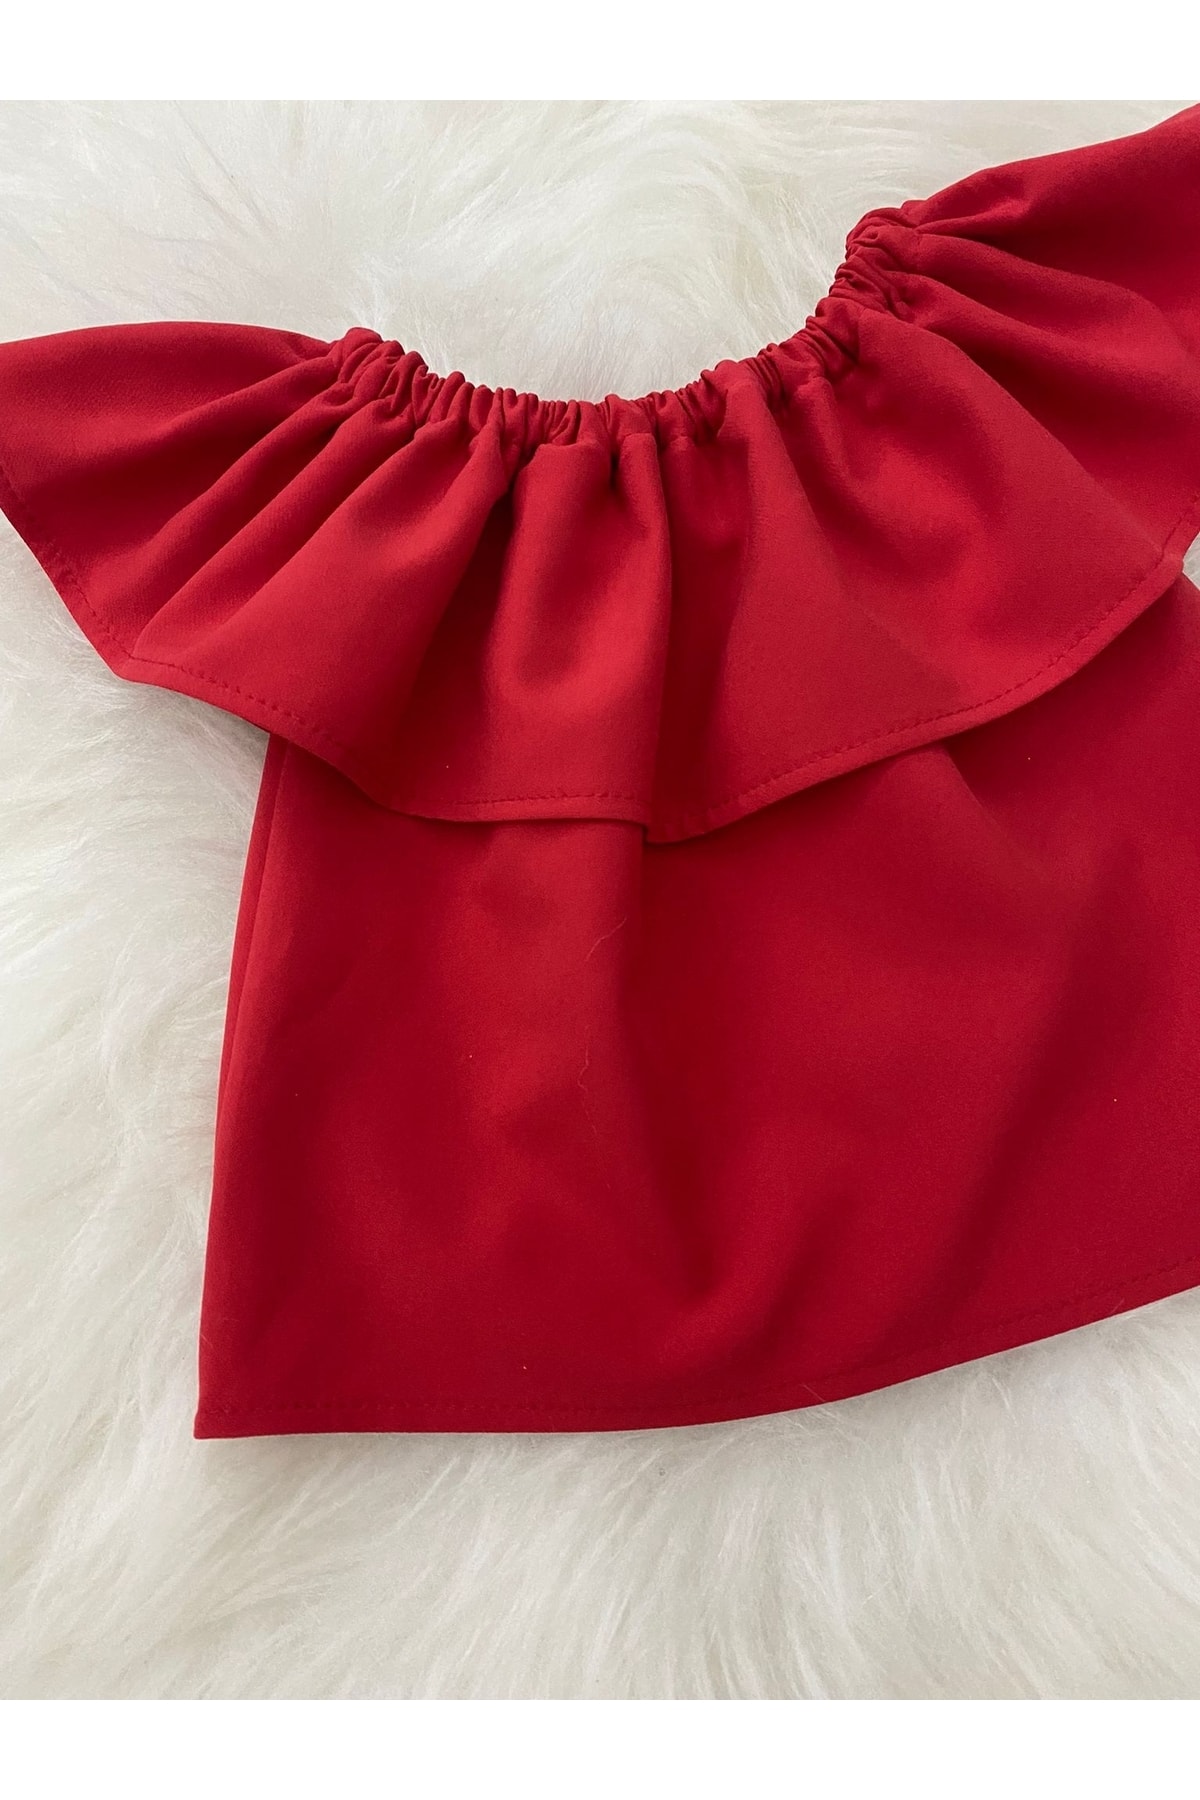 Moda Lina Kırmızı Madonna Yaka Bluz